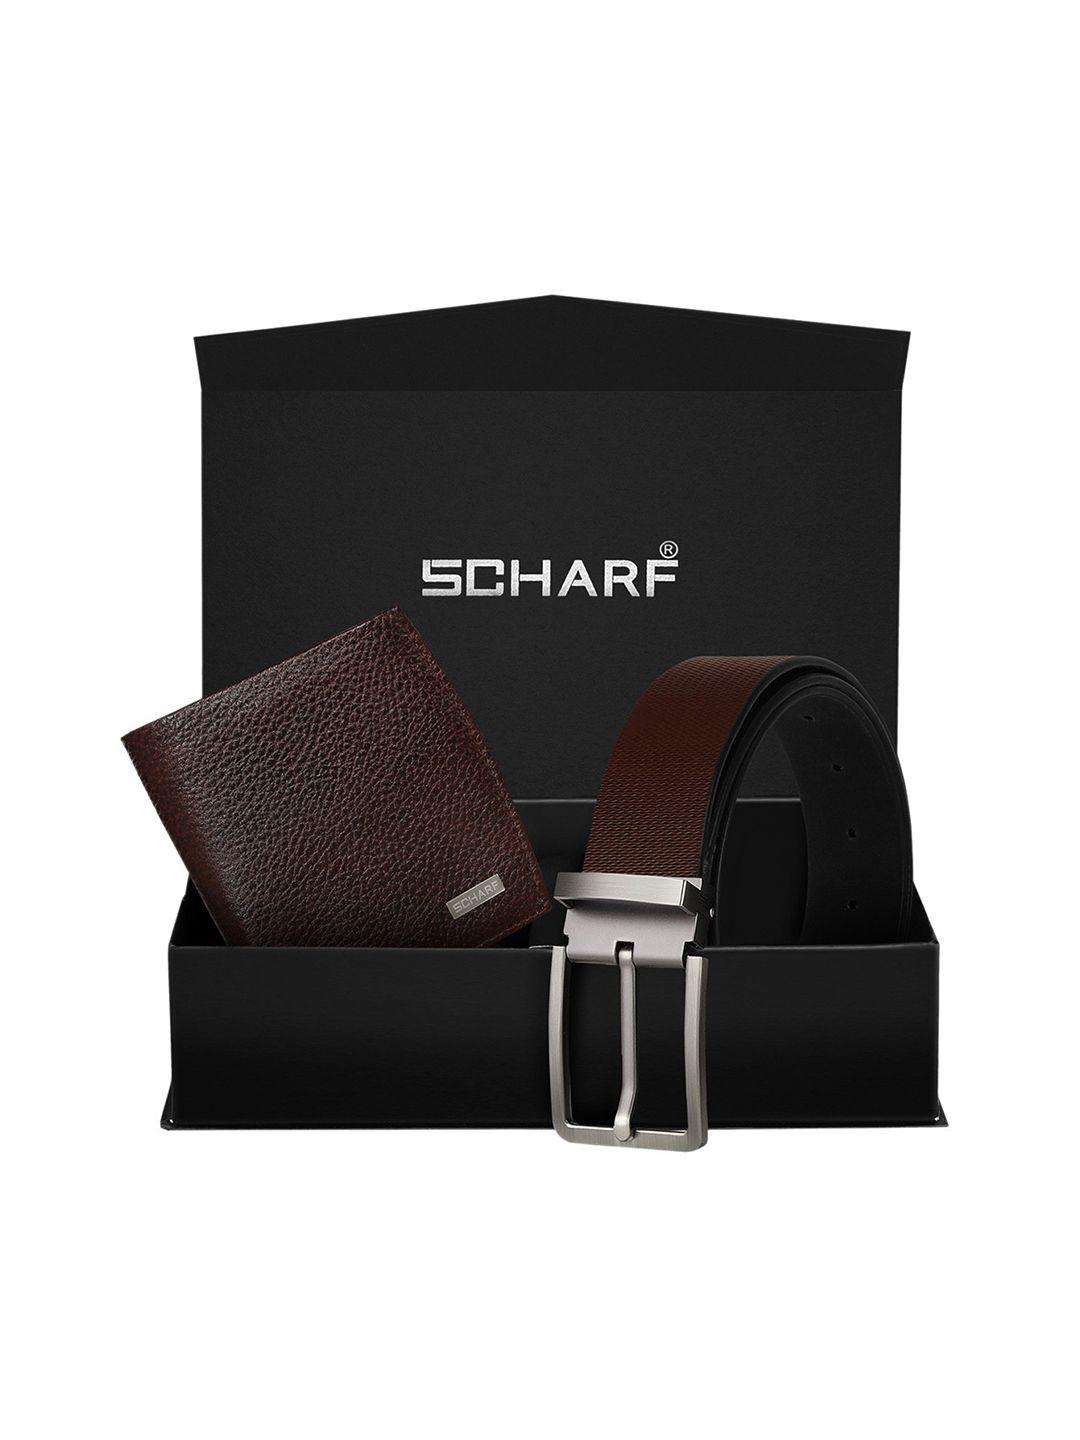 scharf men brown genuine leather formal belt & wallet gift set